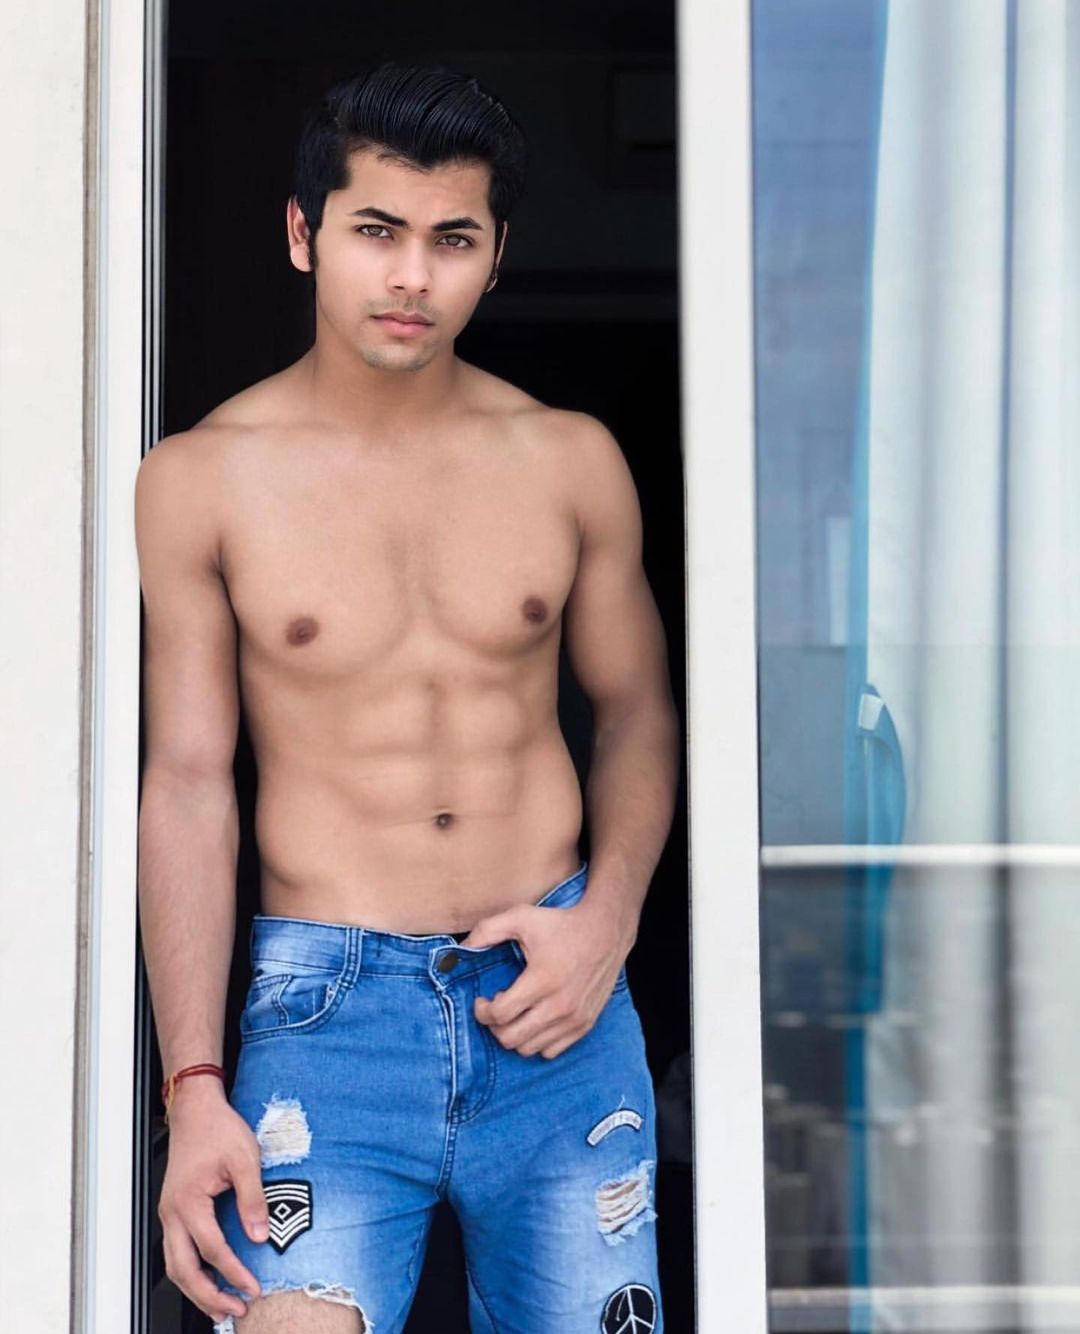 Shirtless Bollywood Men November 2020